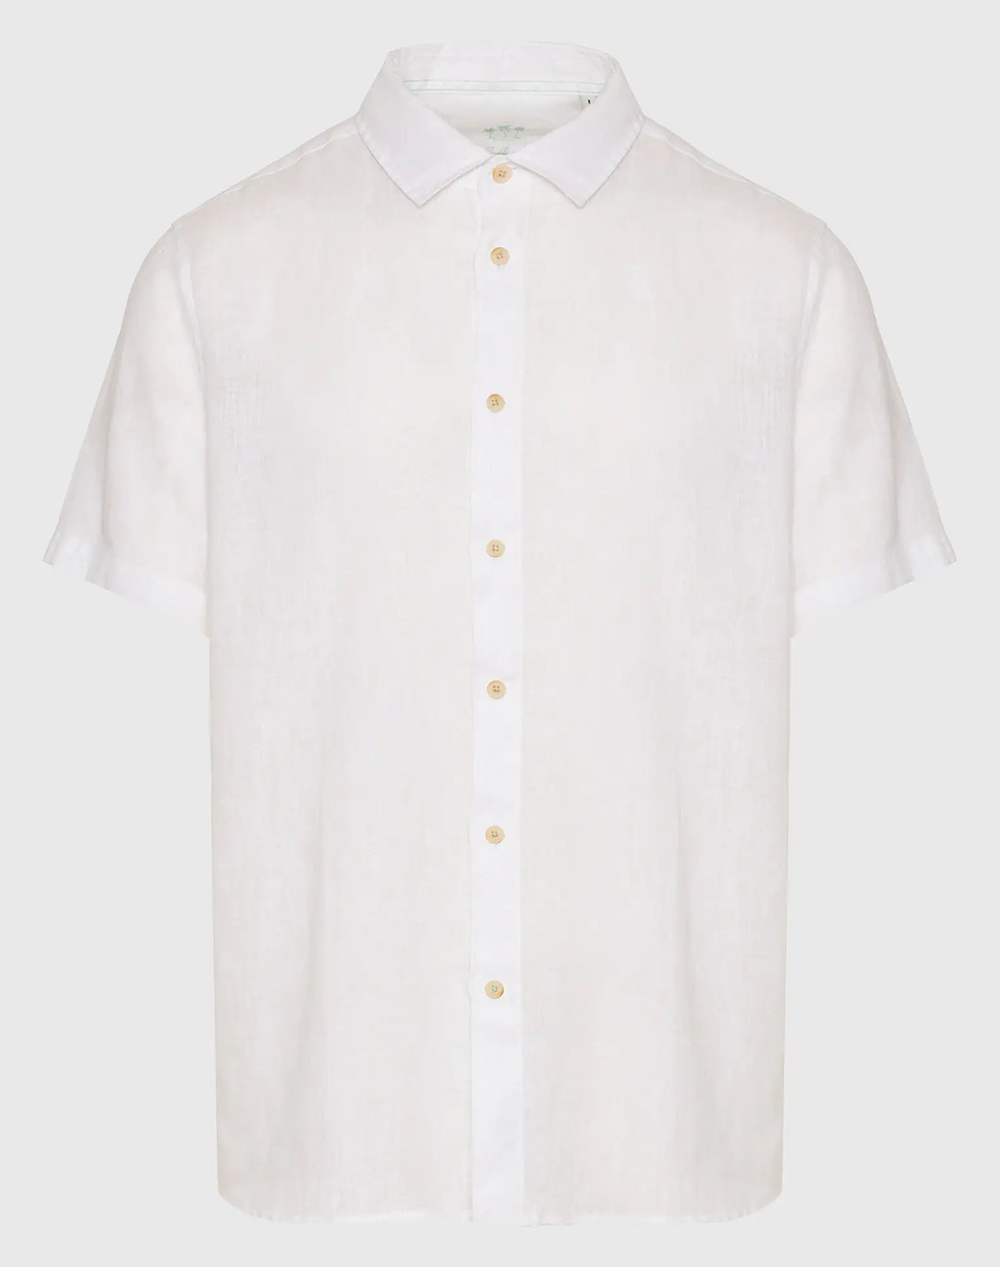 FUNKY BUDDHA Garment dyed κοντομάνικο λινό πουκάμισο FBM009-002-05-WHITE White